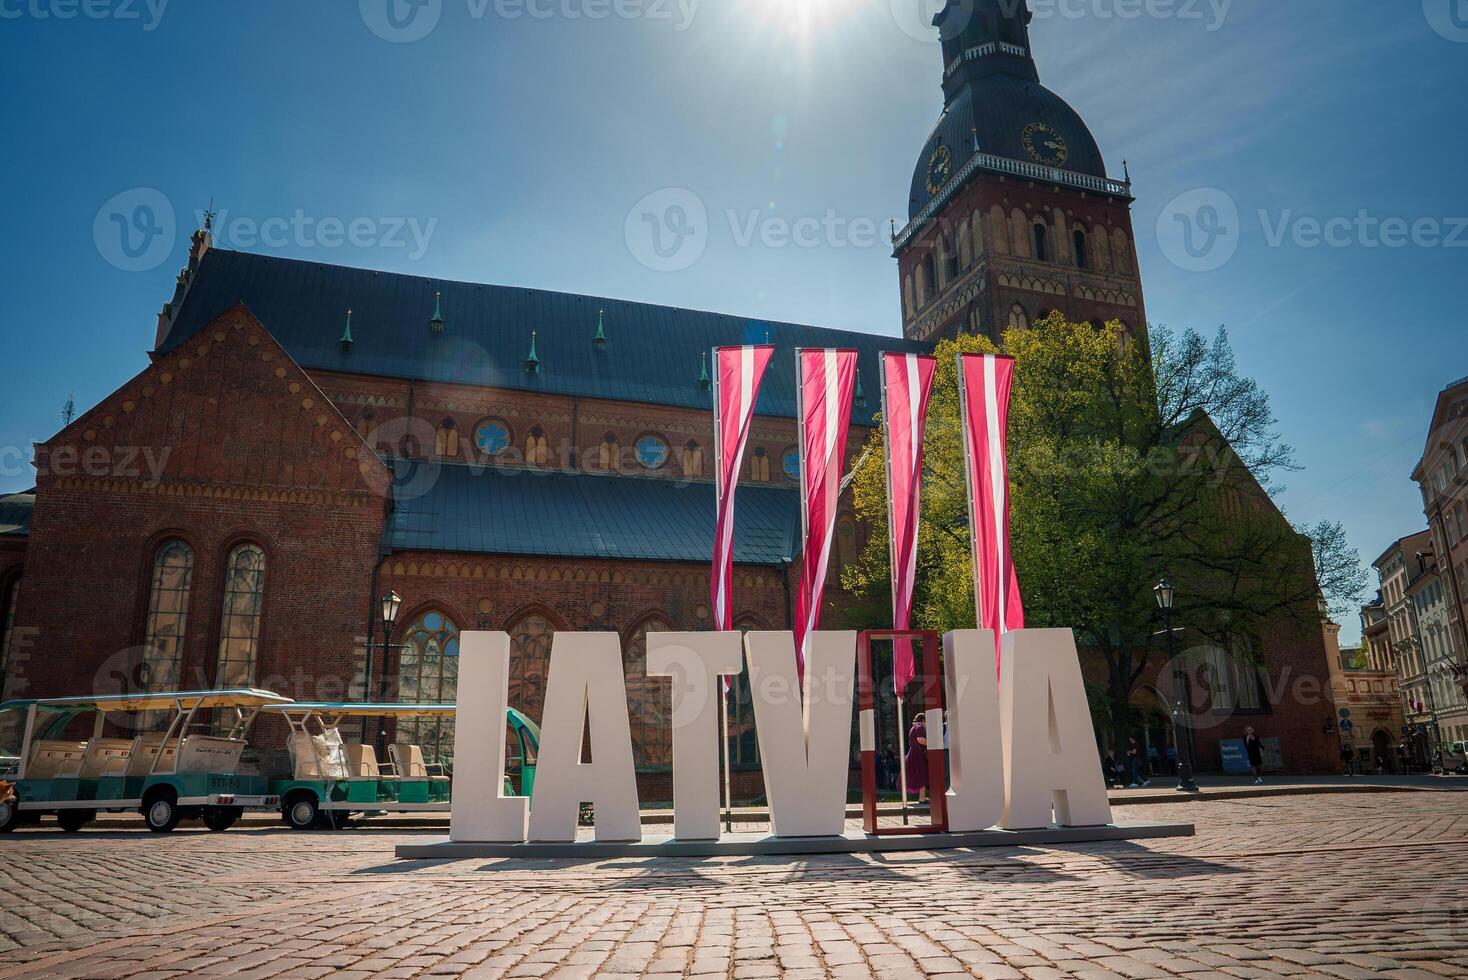 ensoleillé journée dans vieux ville riga avec Lettonie signe et chariot autobus photo